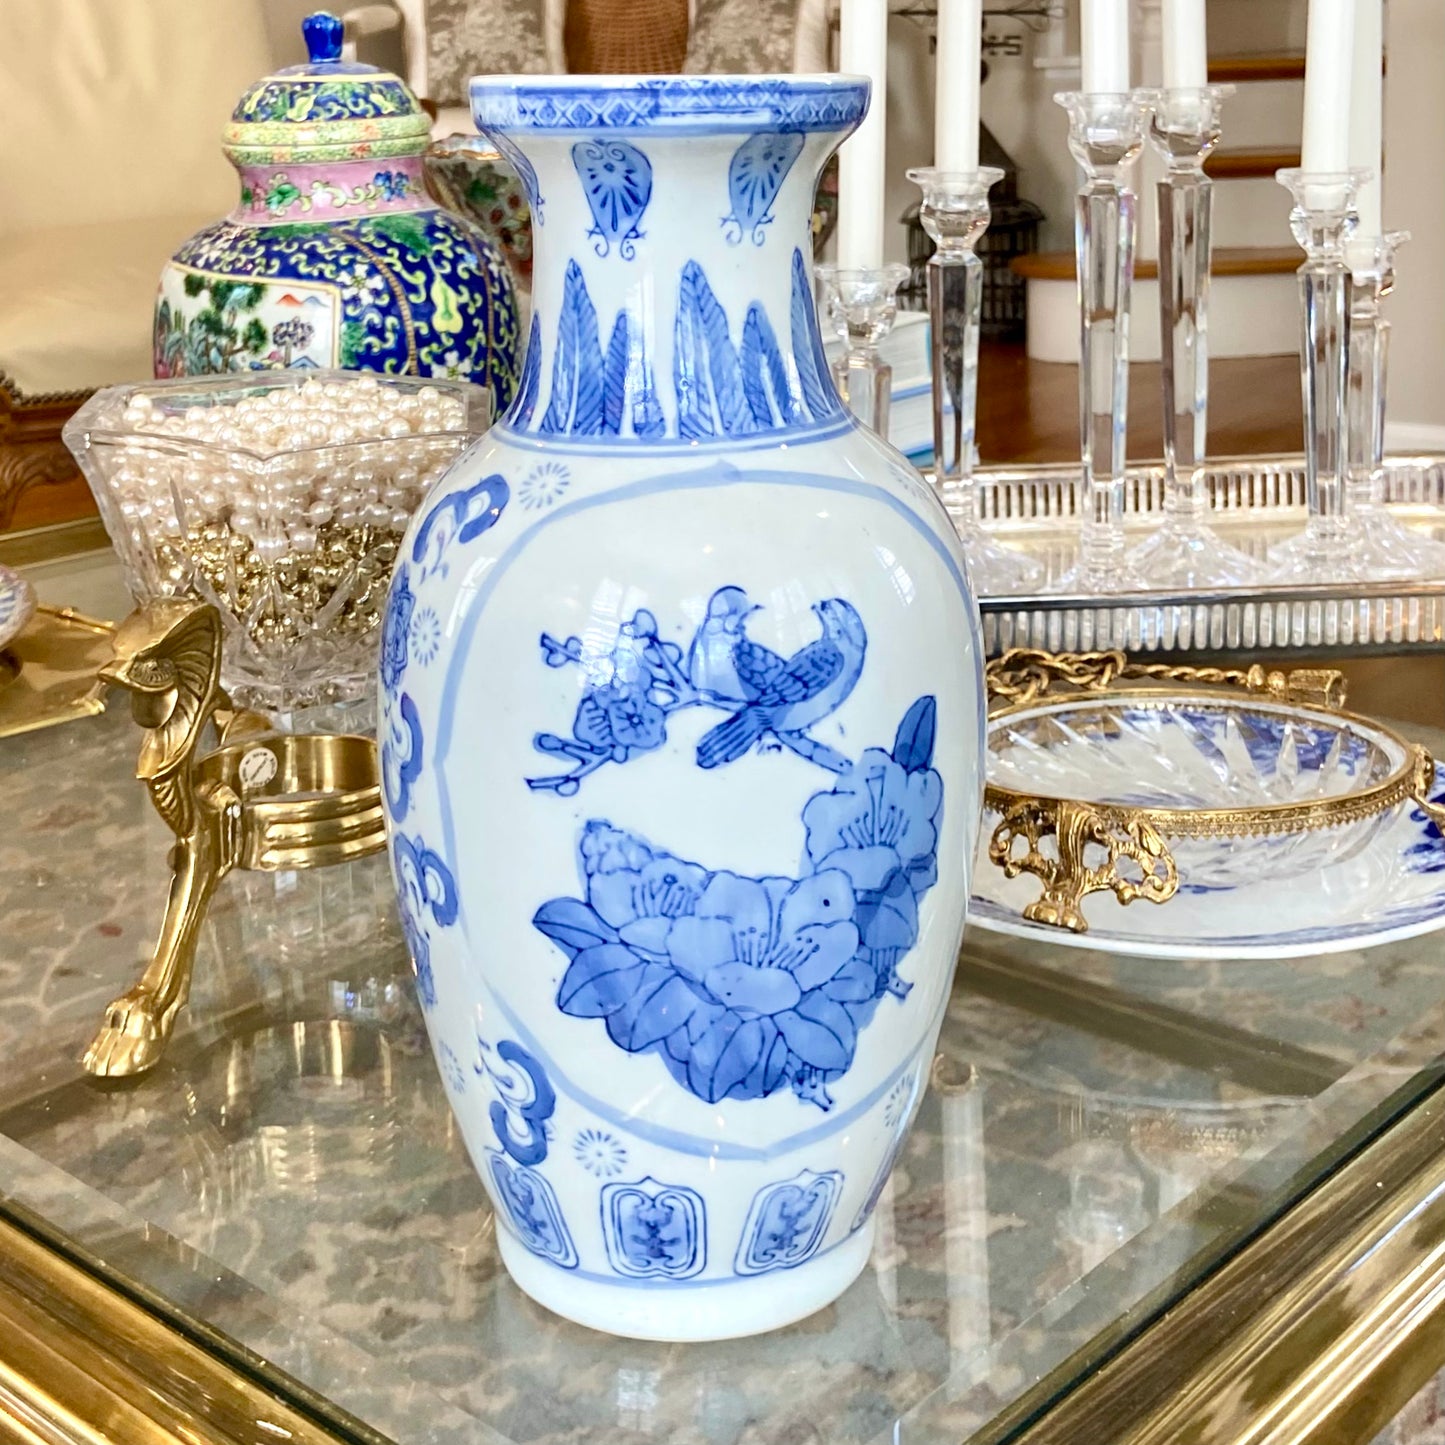 Vintage chinoiserie blue & white ginger jar tall vase.